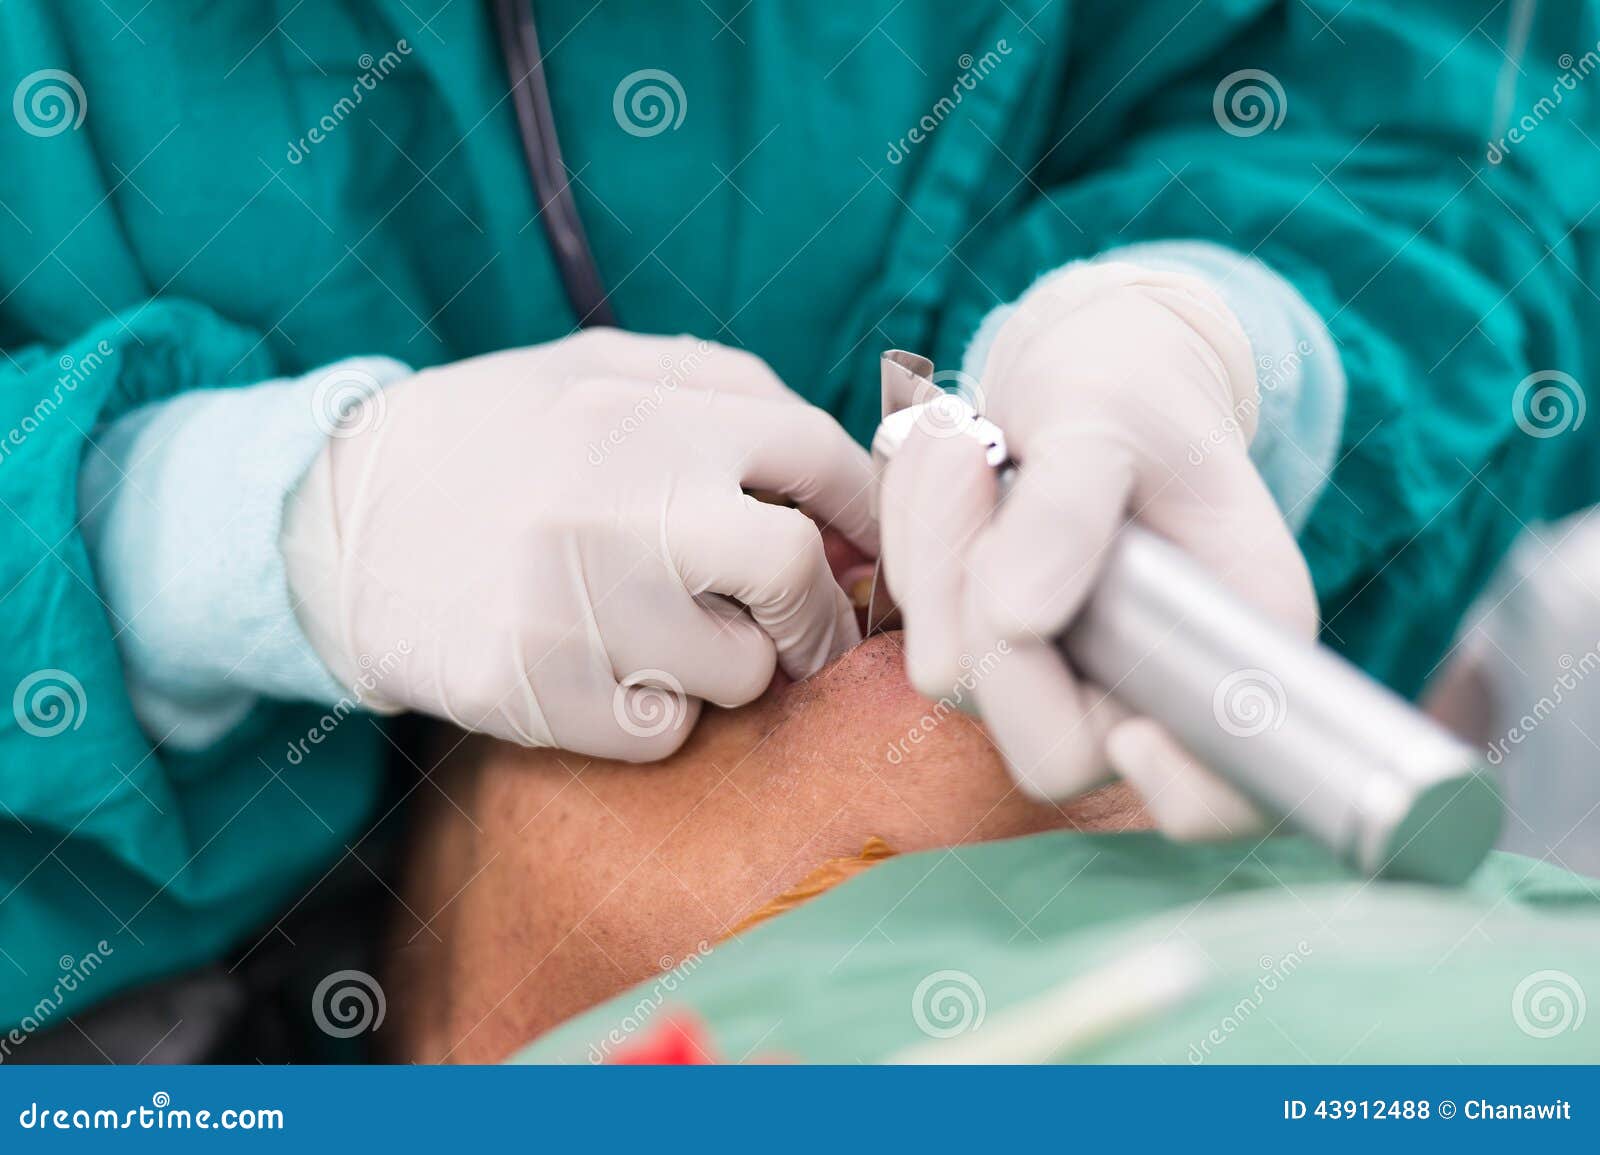 apply laryngoscope blade for insert endotracheal tube